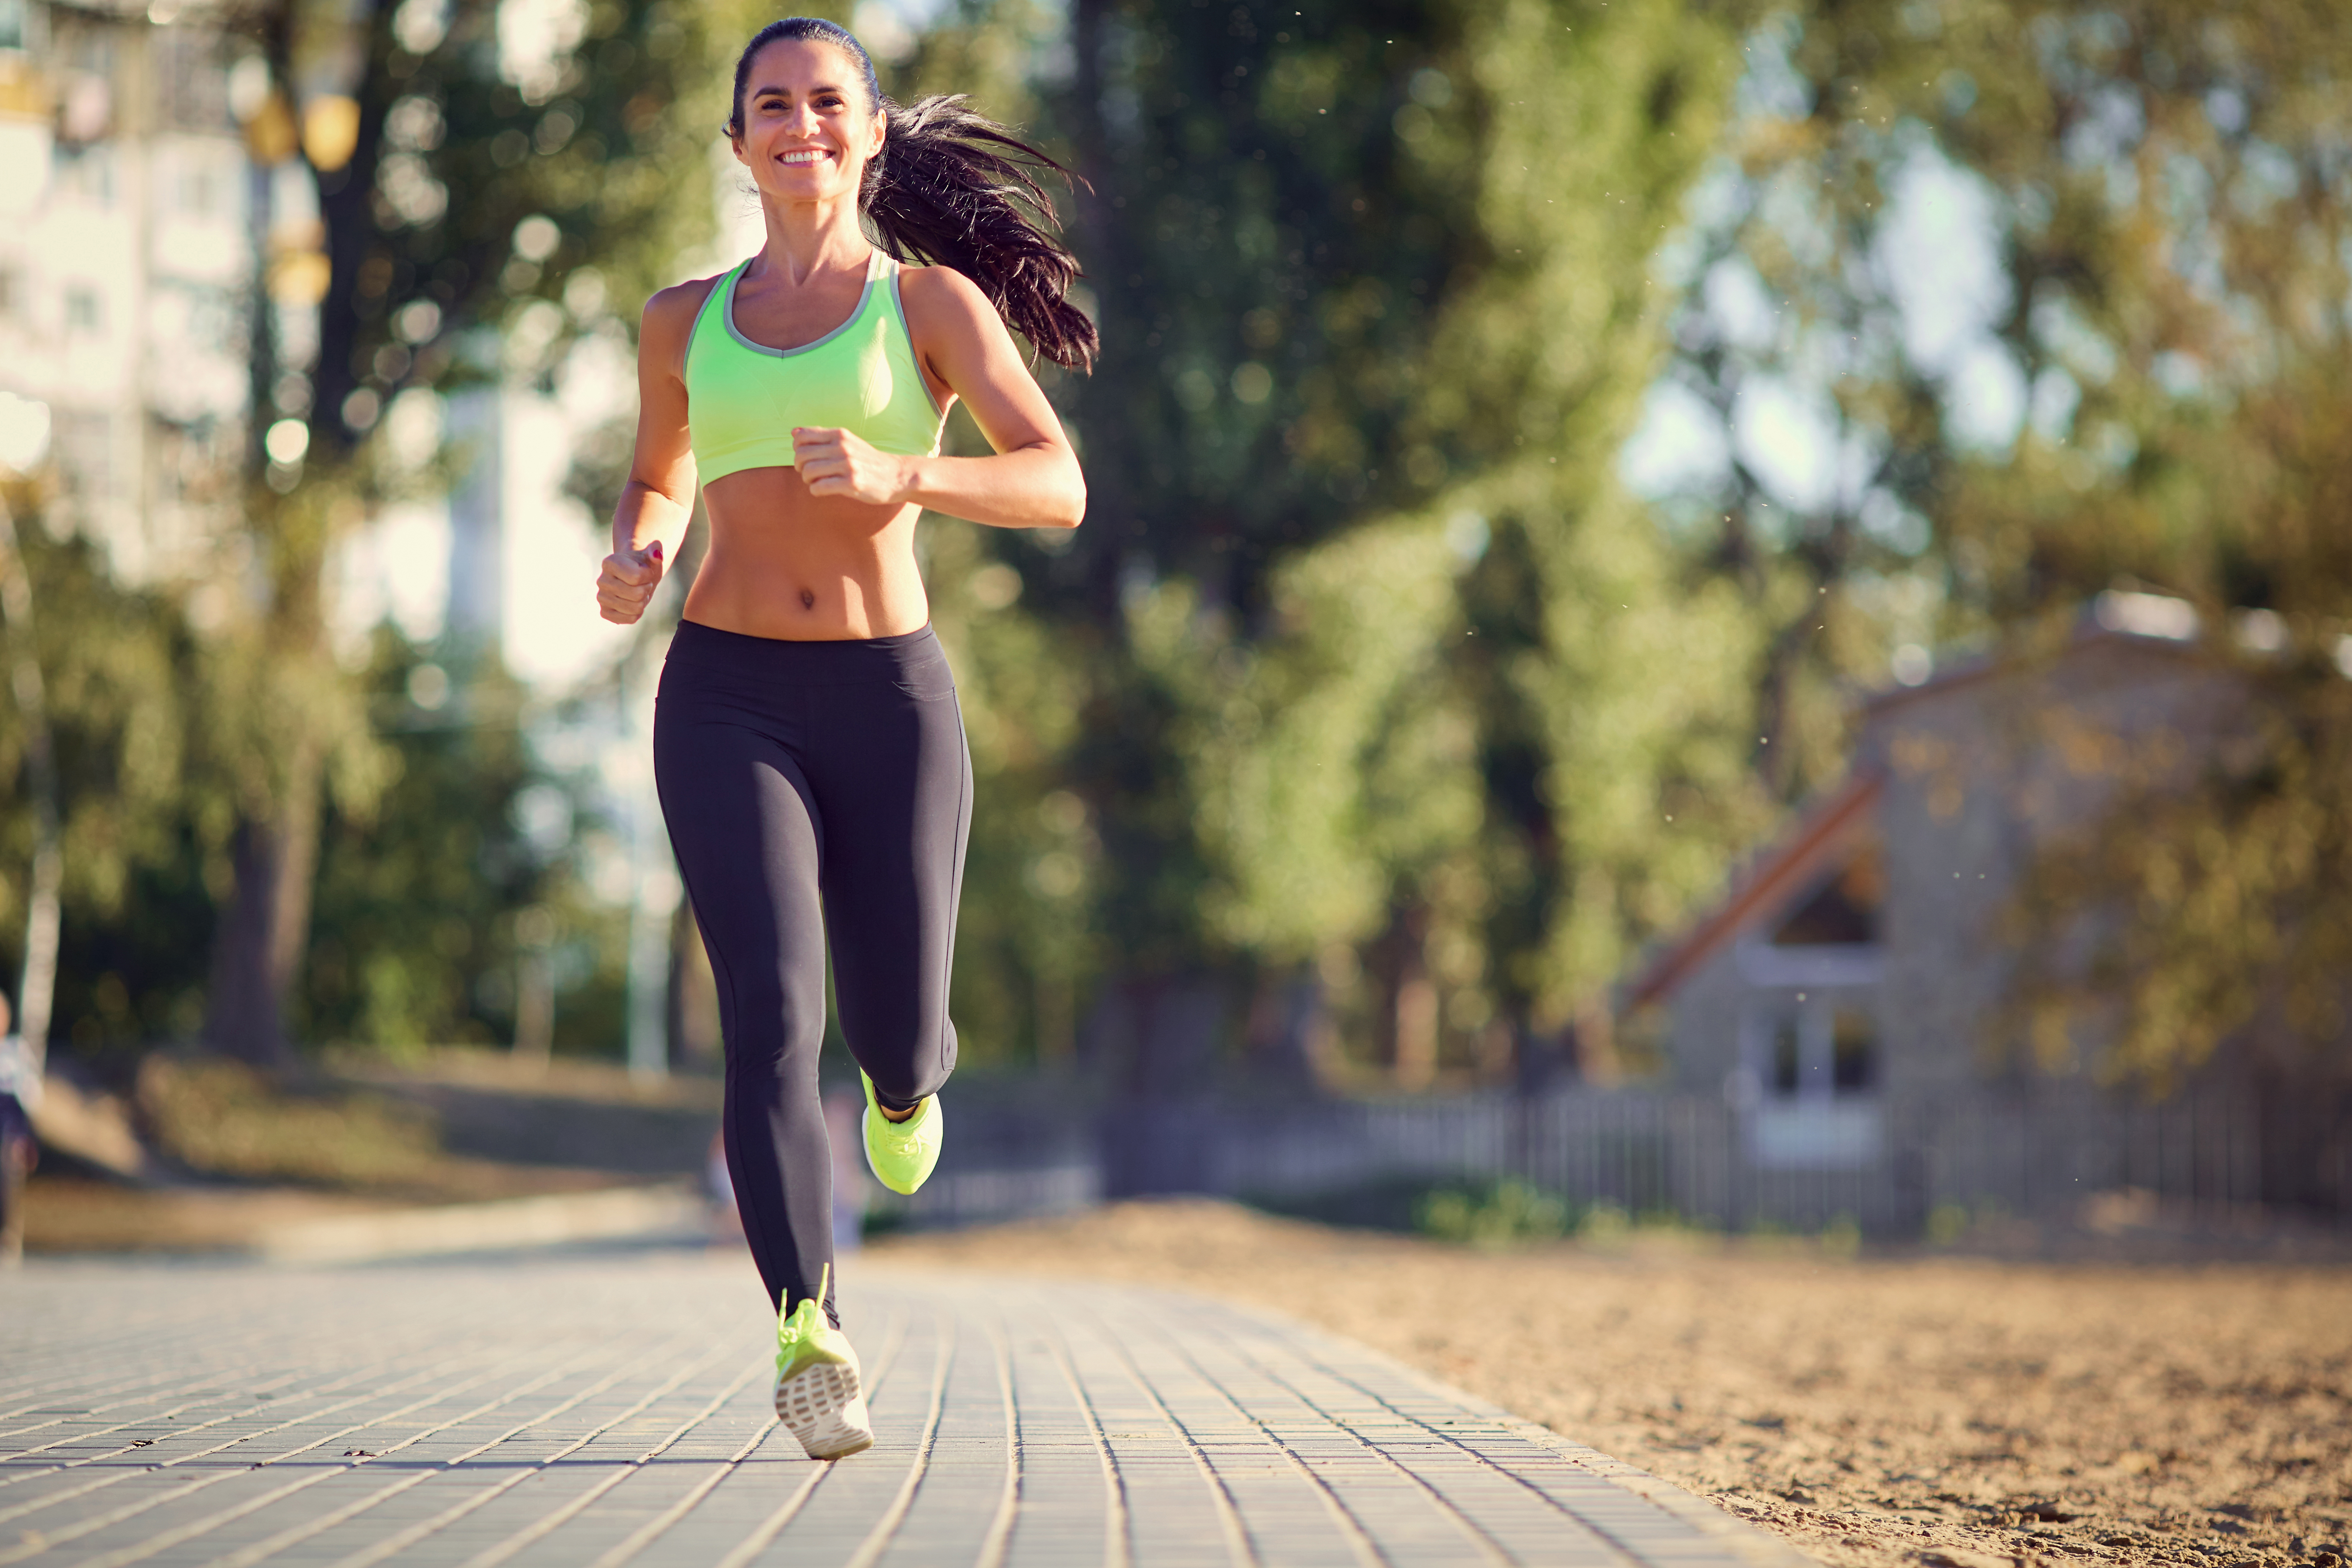 magas vérnyomás esetén a futás vagy a járás hasznos